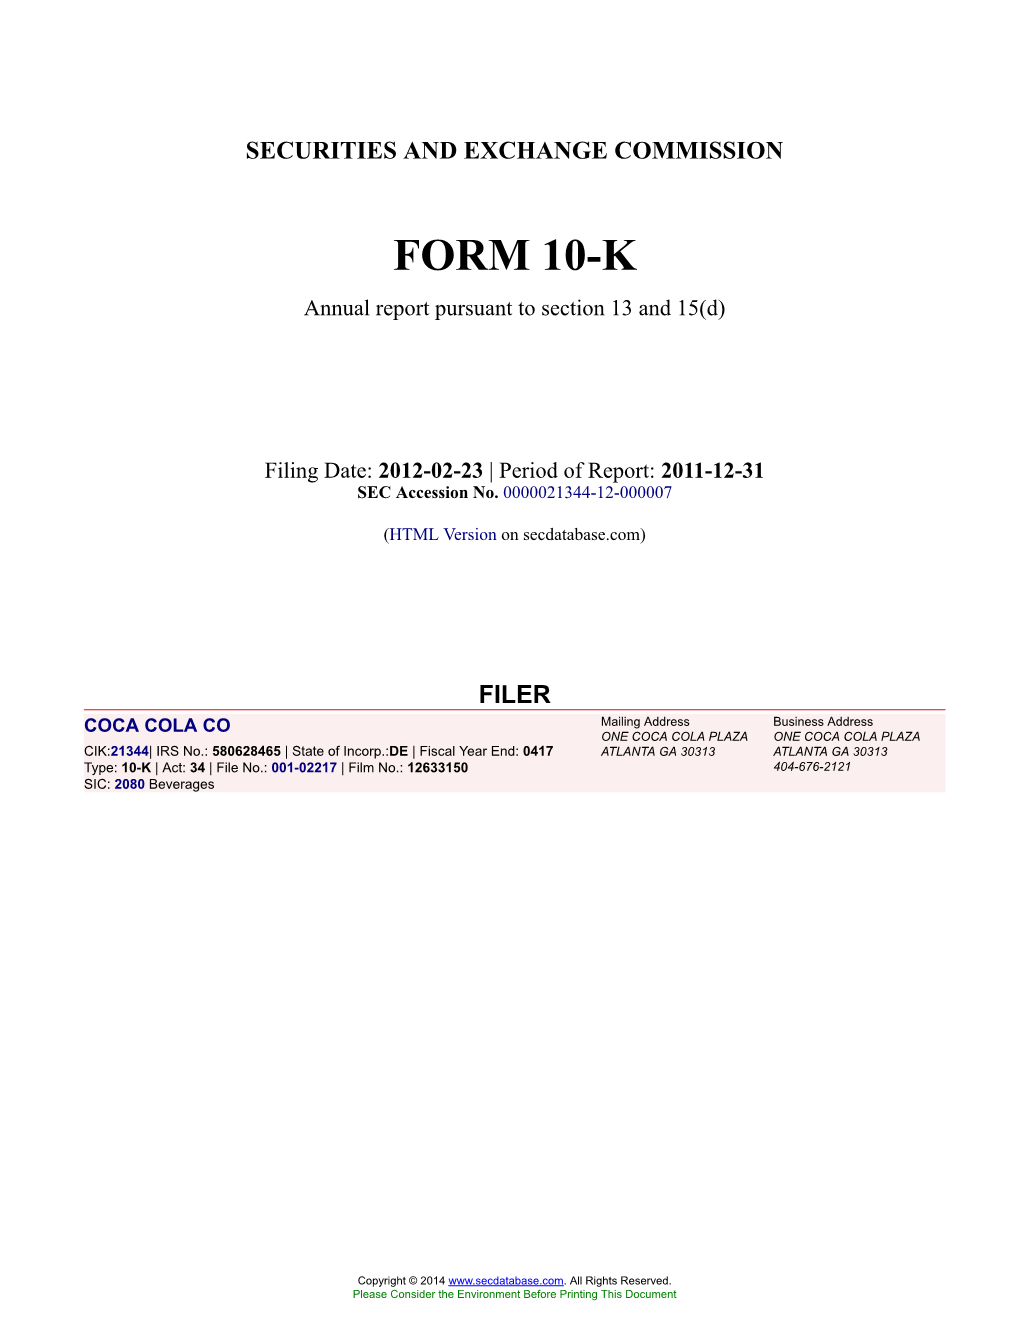 COCA COLA CO Form 10-K Annual Report Filed 2012-02-23